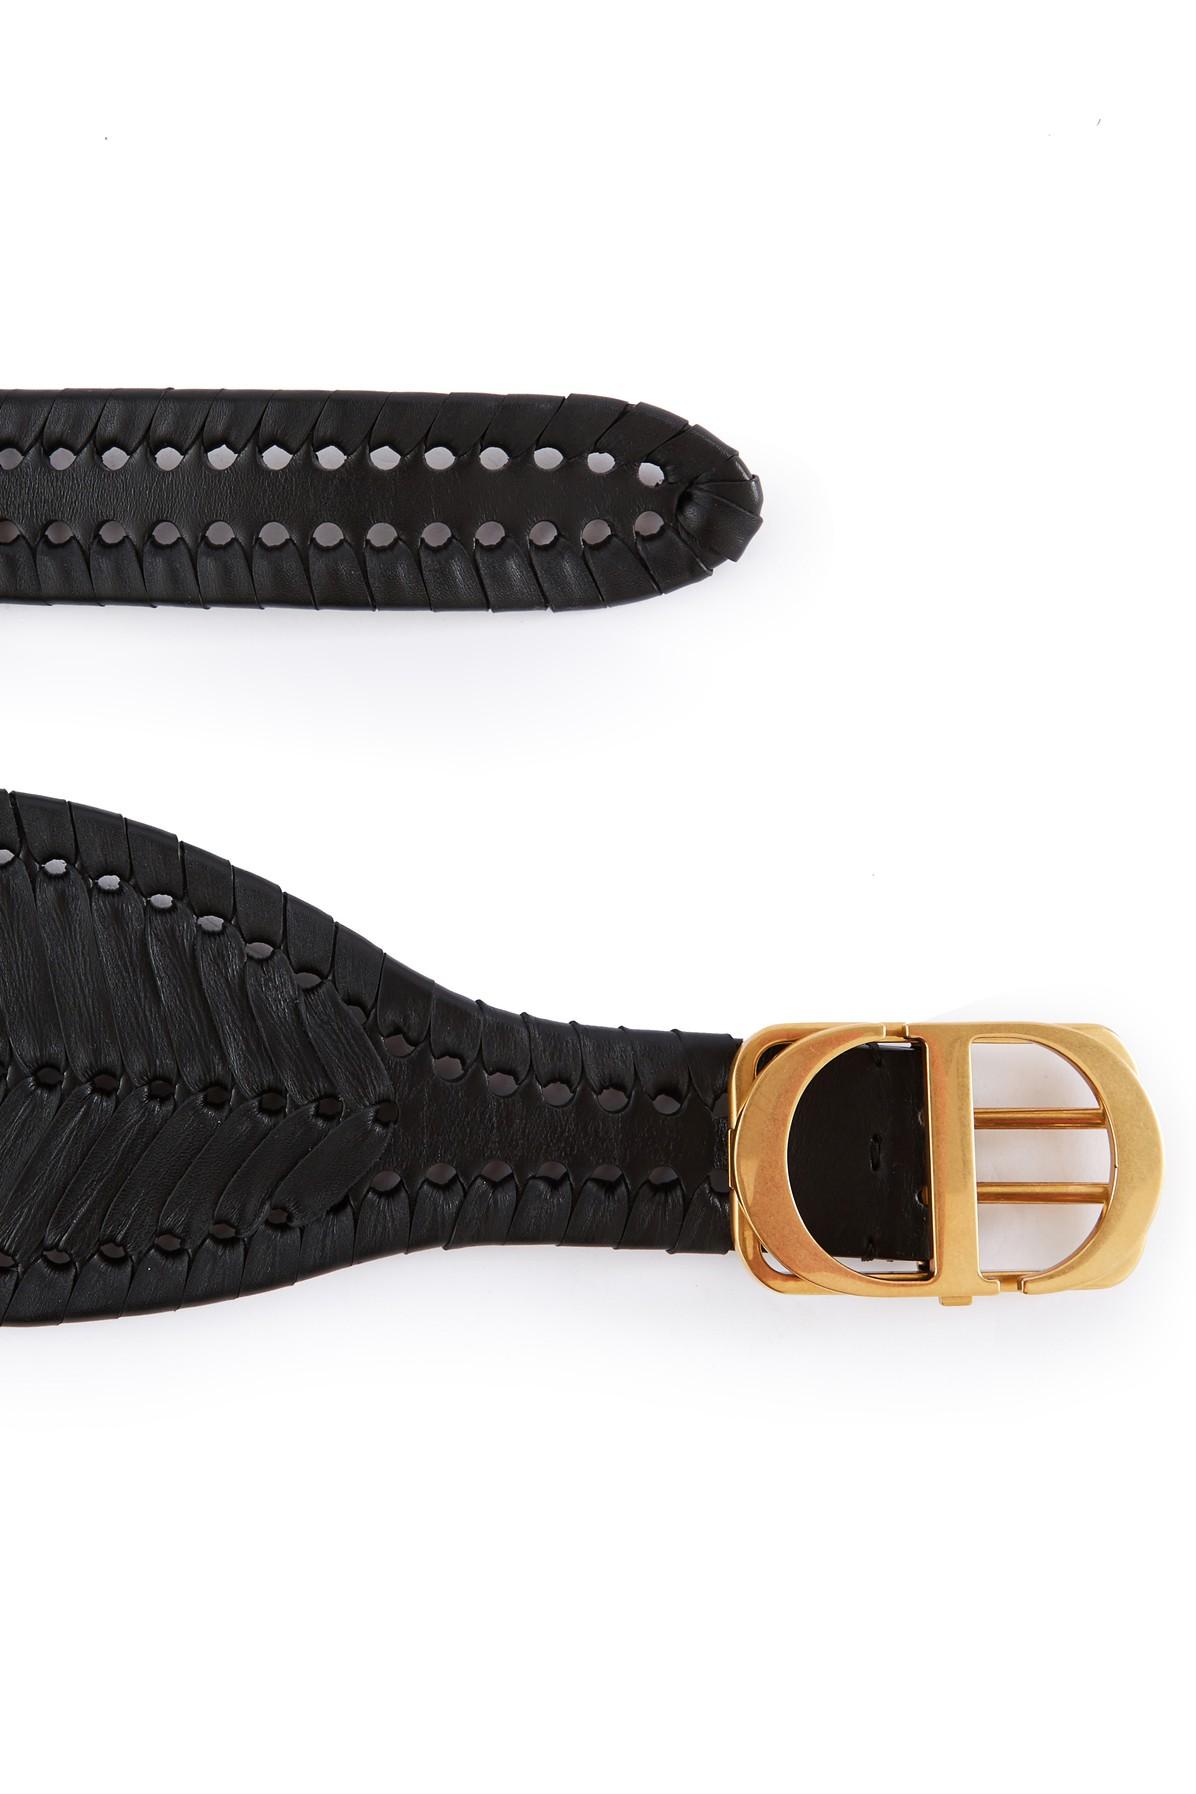 Dior 30 Montaigne Large Calfskin Belt in Black | Lyst